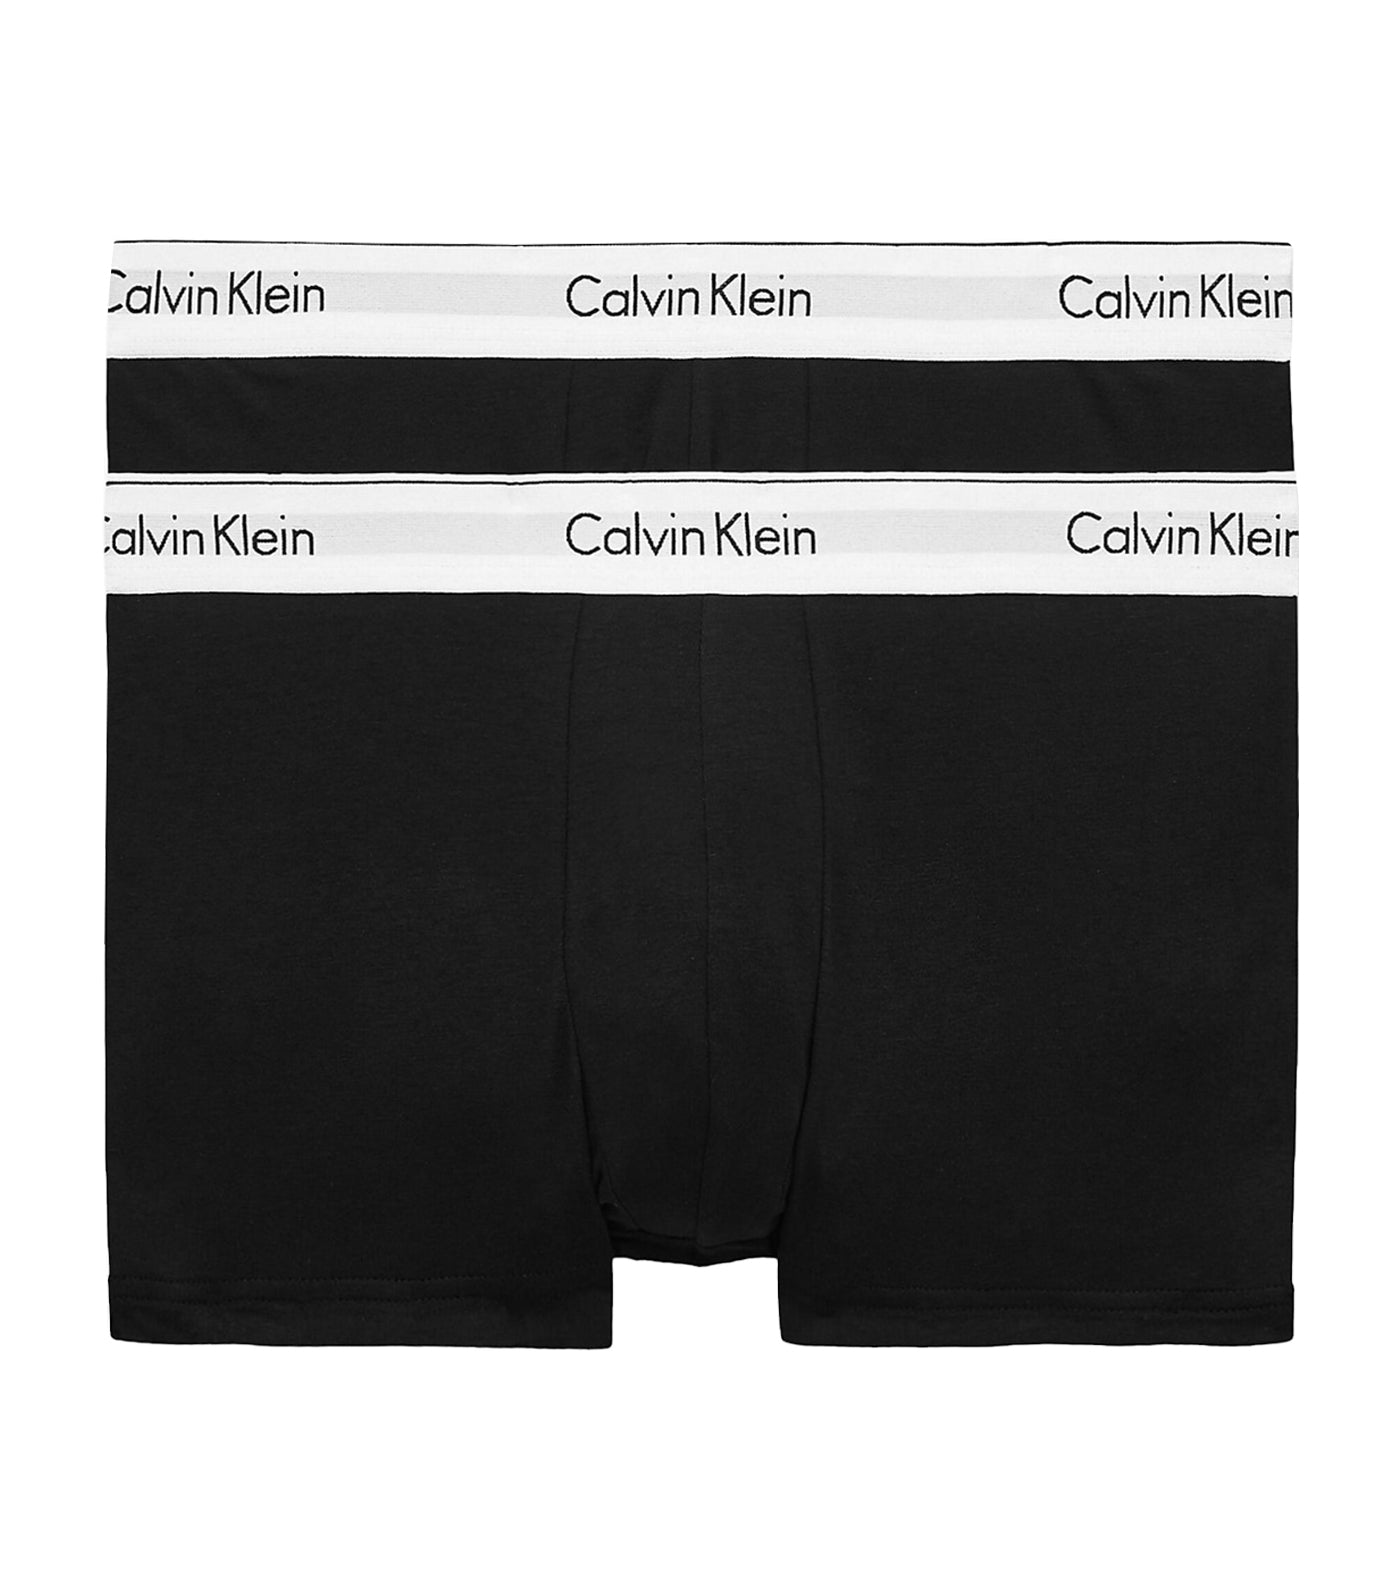 30.0% OFF on CALVIN KLEIN Men's Modern Cotton Stretch Trunk 2 Pack